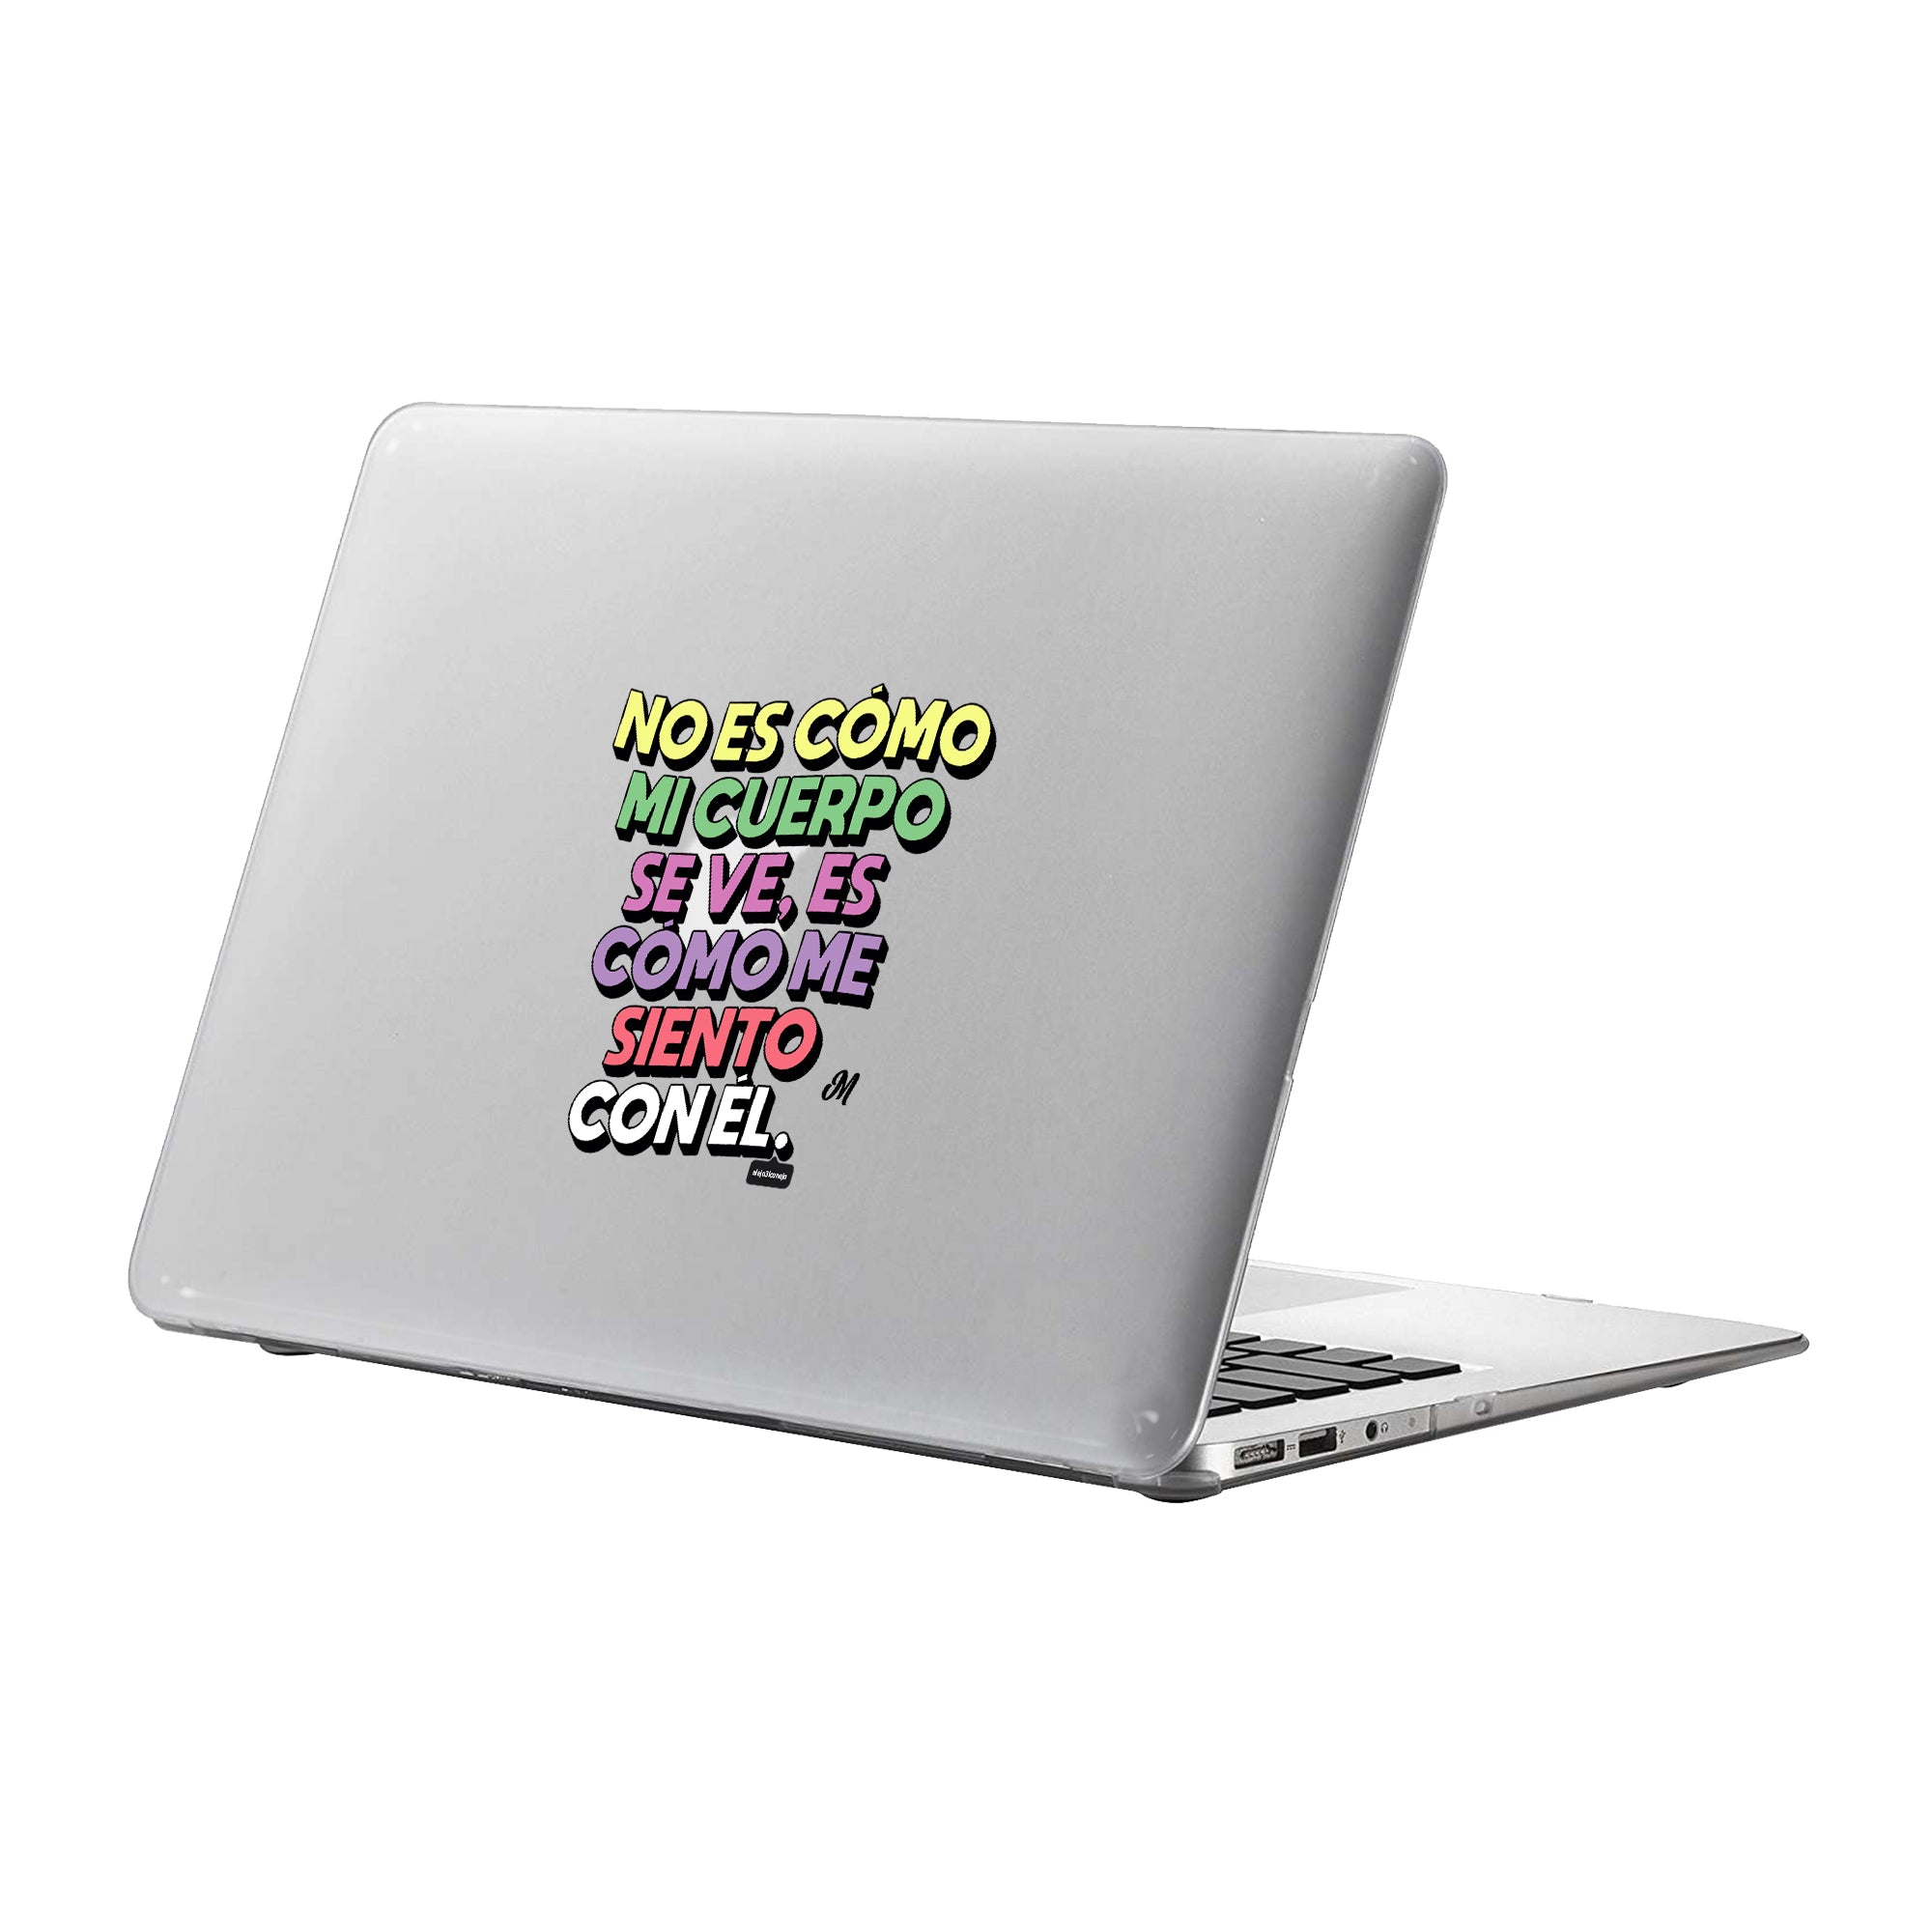 Vive tu cuerpo MacBook Case - Mandala Cases